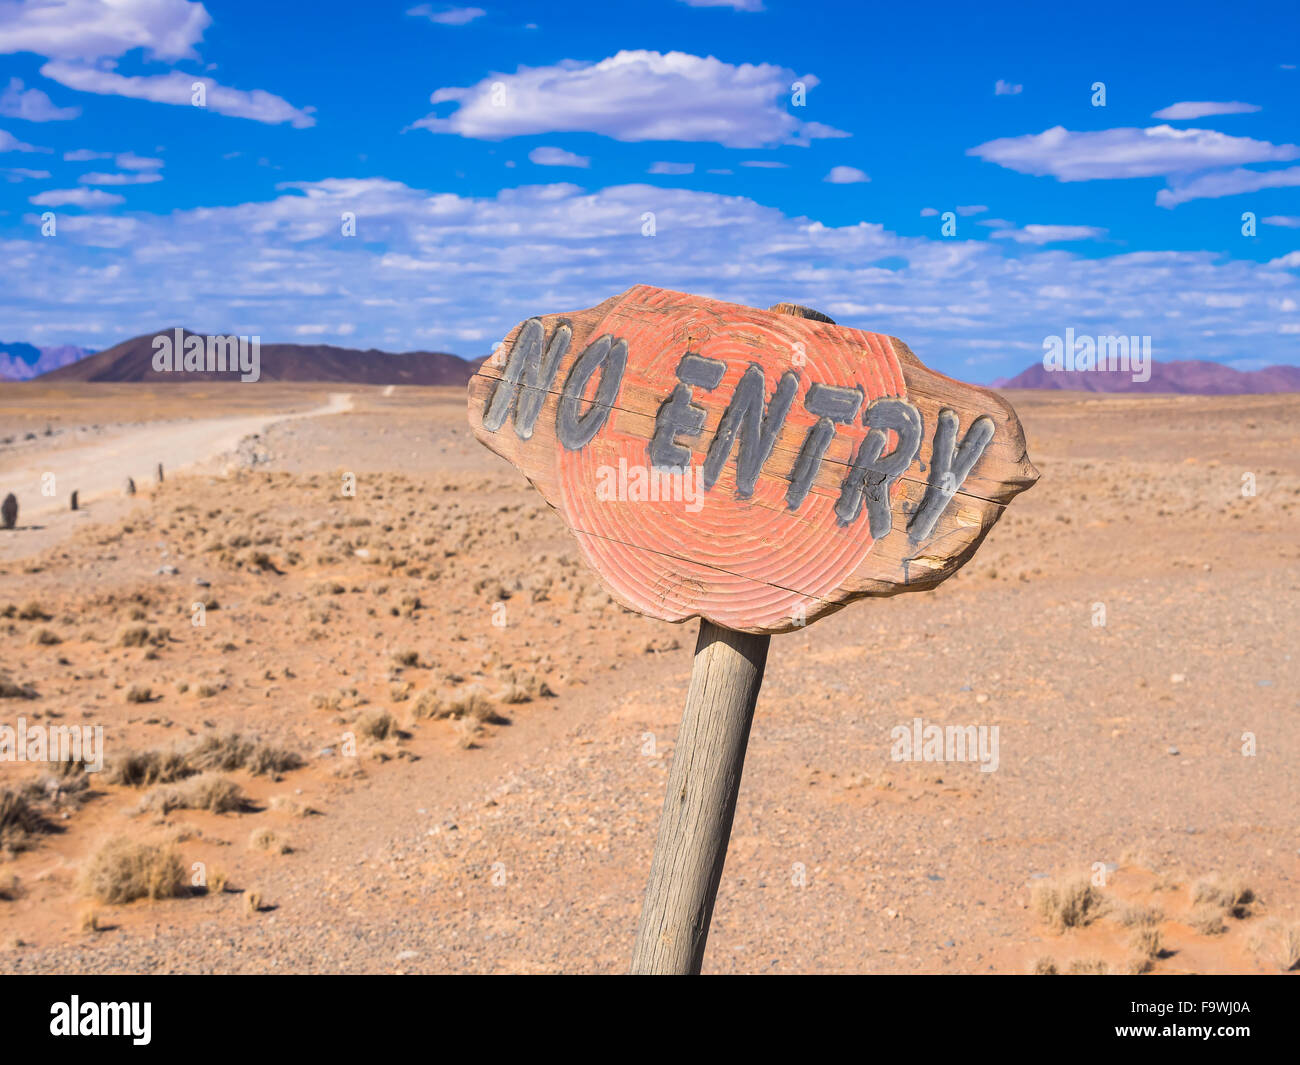 Namibia, Hardap, no entry sign at Kulala Wilderness Reserve Stock Photo